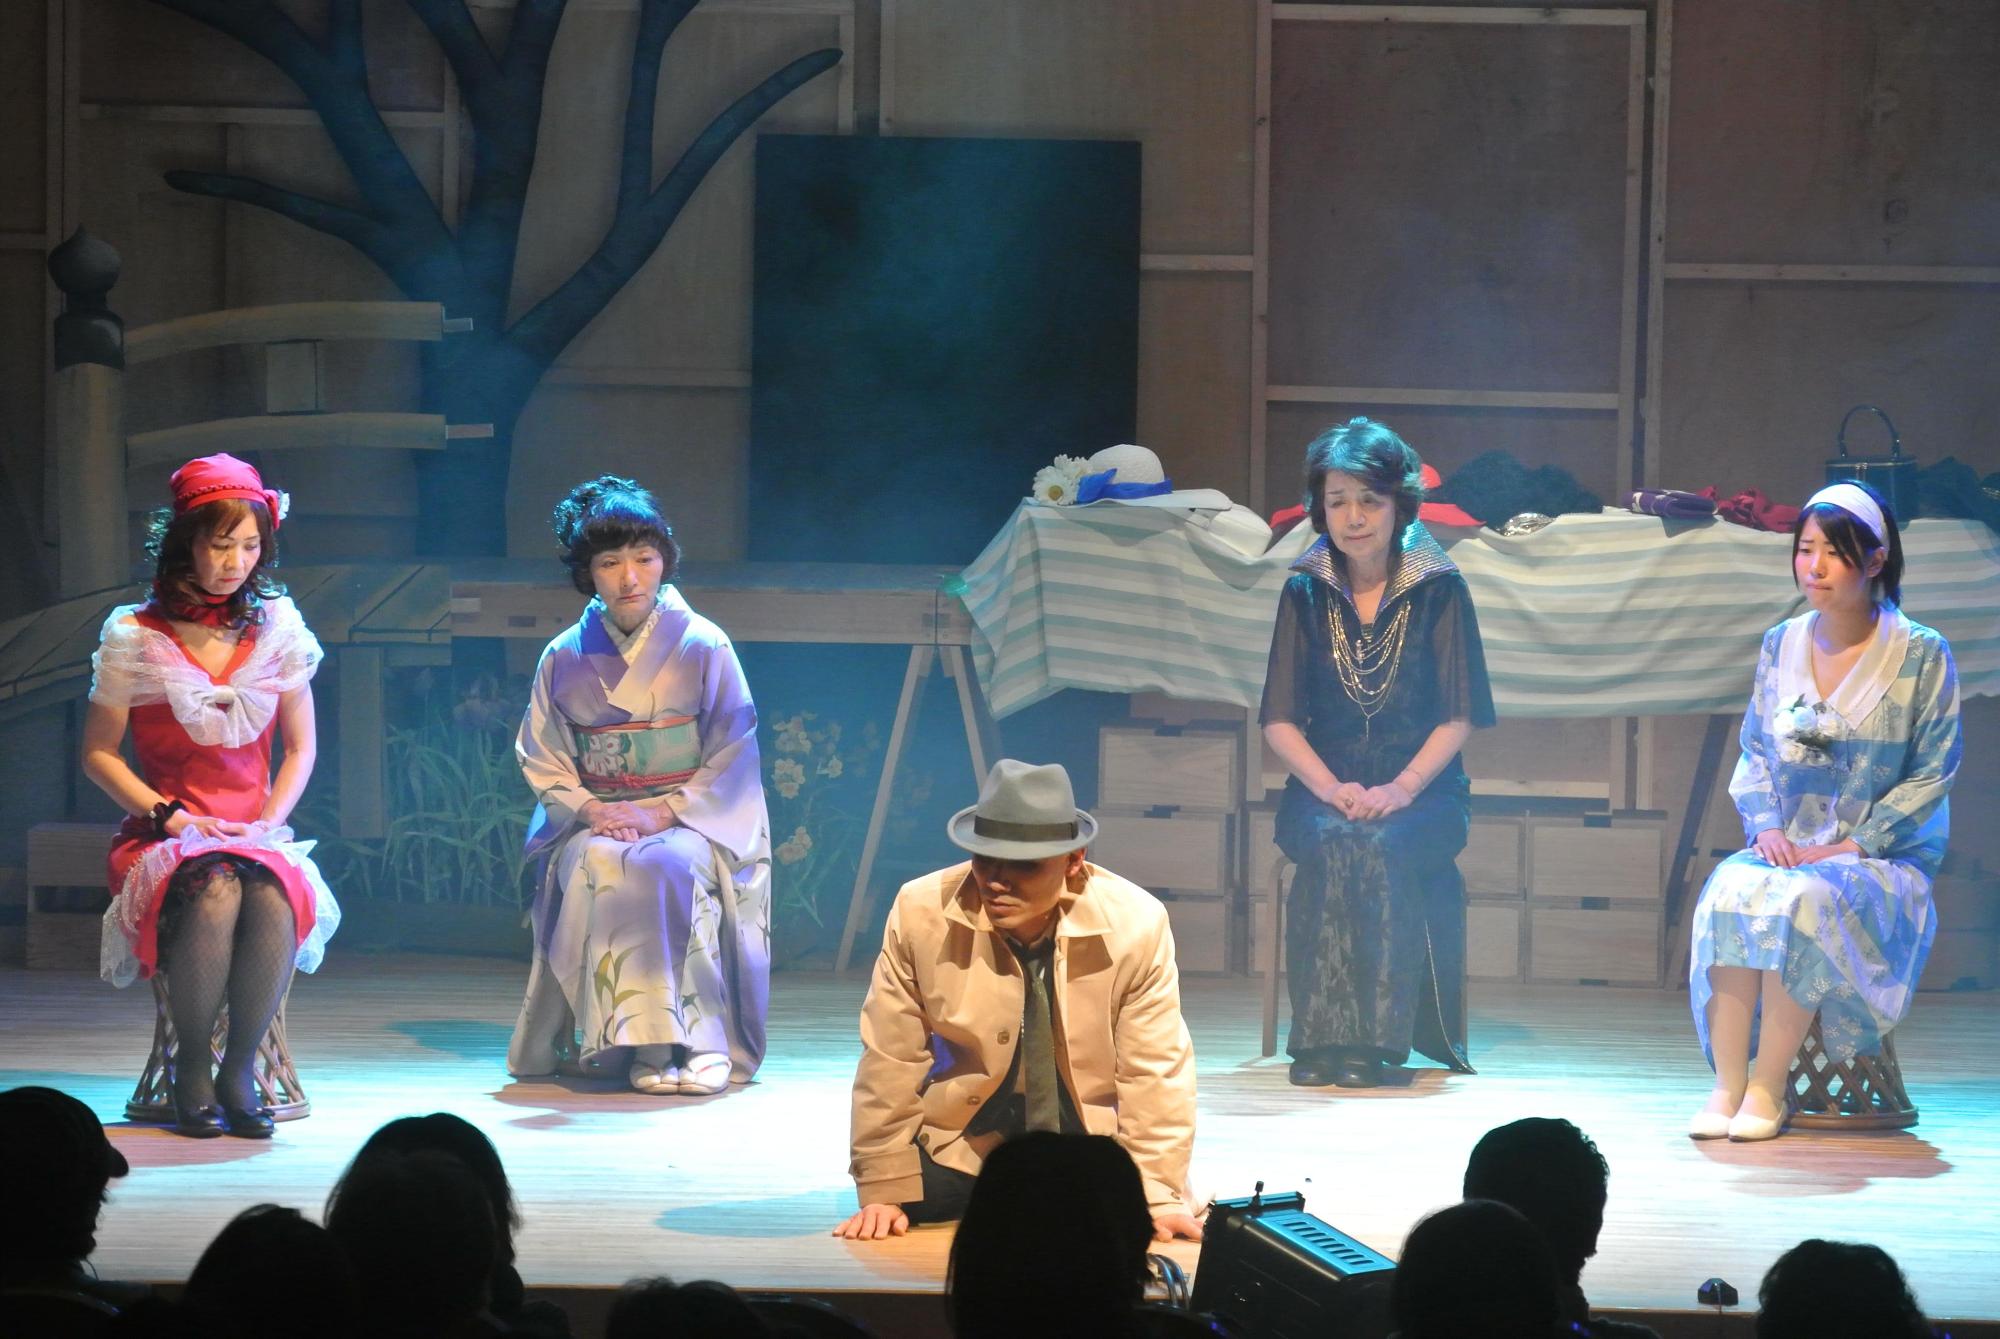 4名の派手な衣装を着た女性が横一列に椅子に座っている中央で、帽子を被ってベージュ色のコートを着ている男性が座って床に手をついているのを見ている一場面の写真